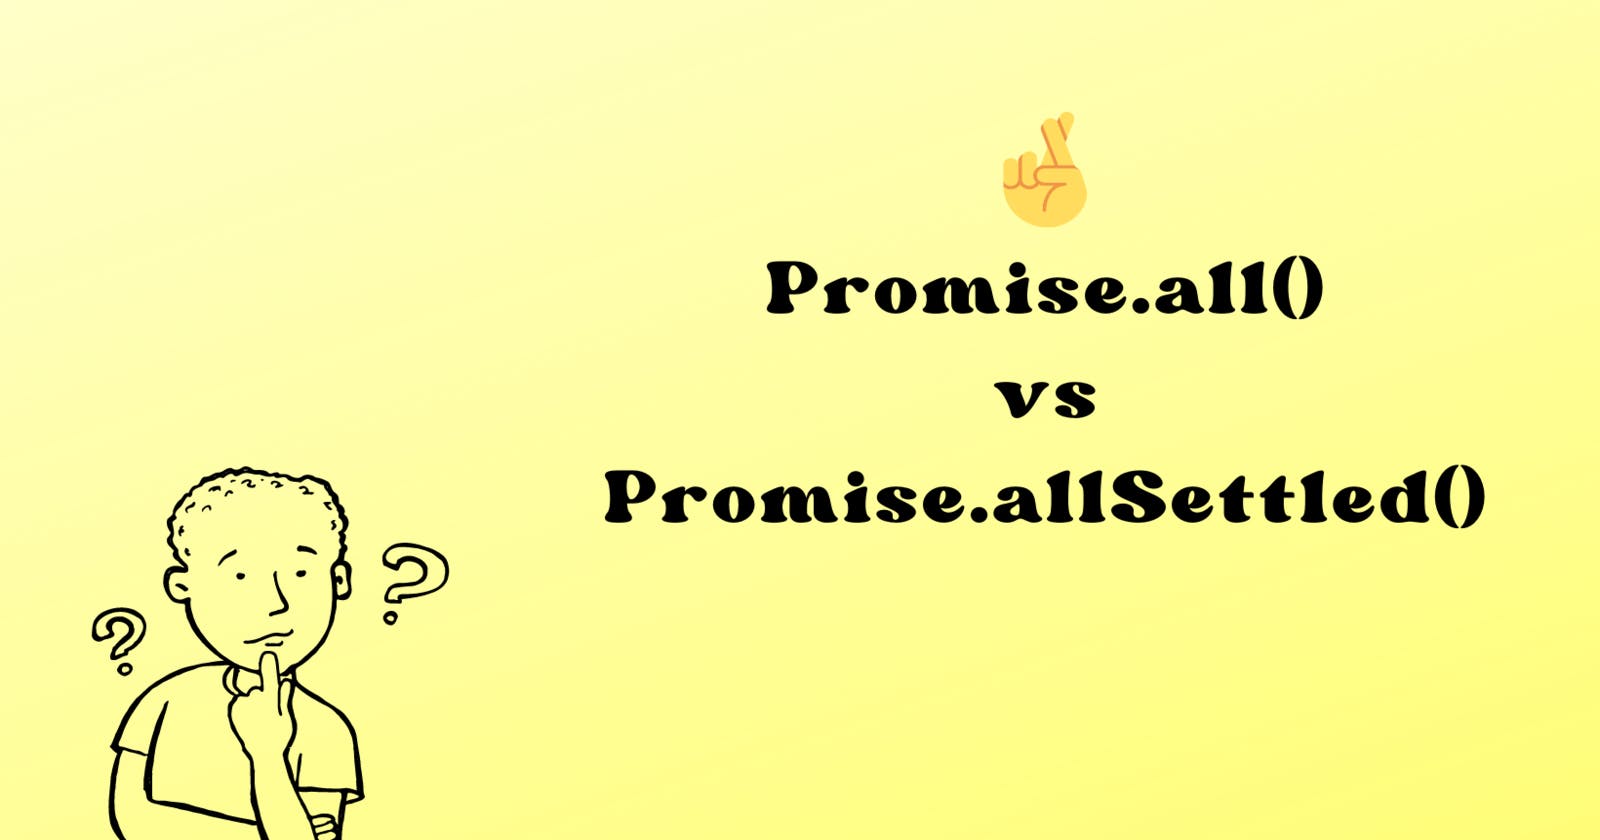 Promise.all() Vs Promise.allSettled() in JS